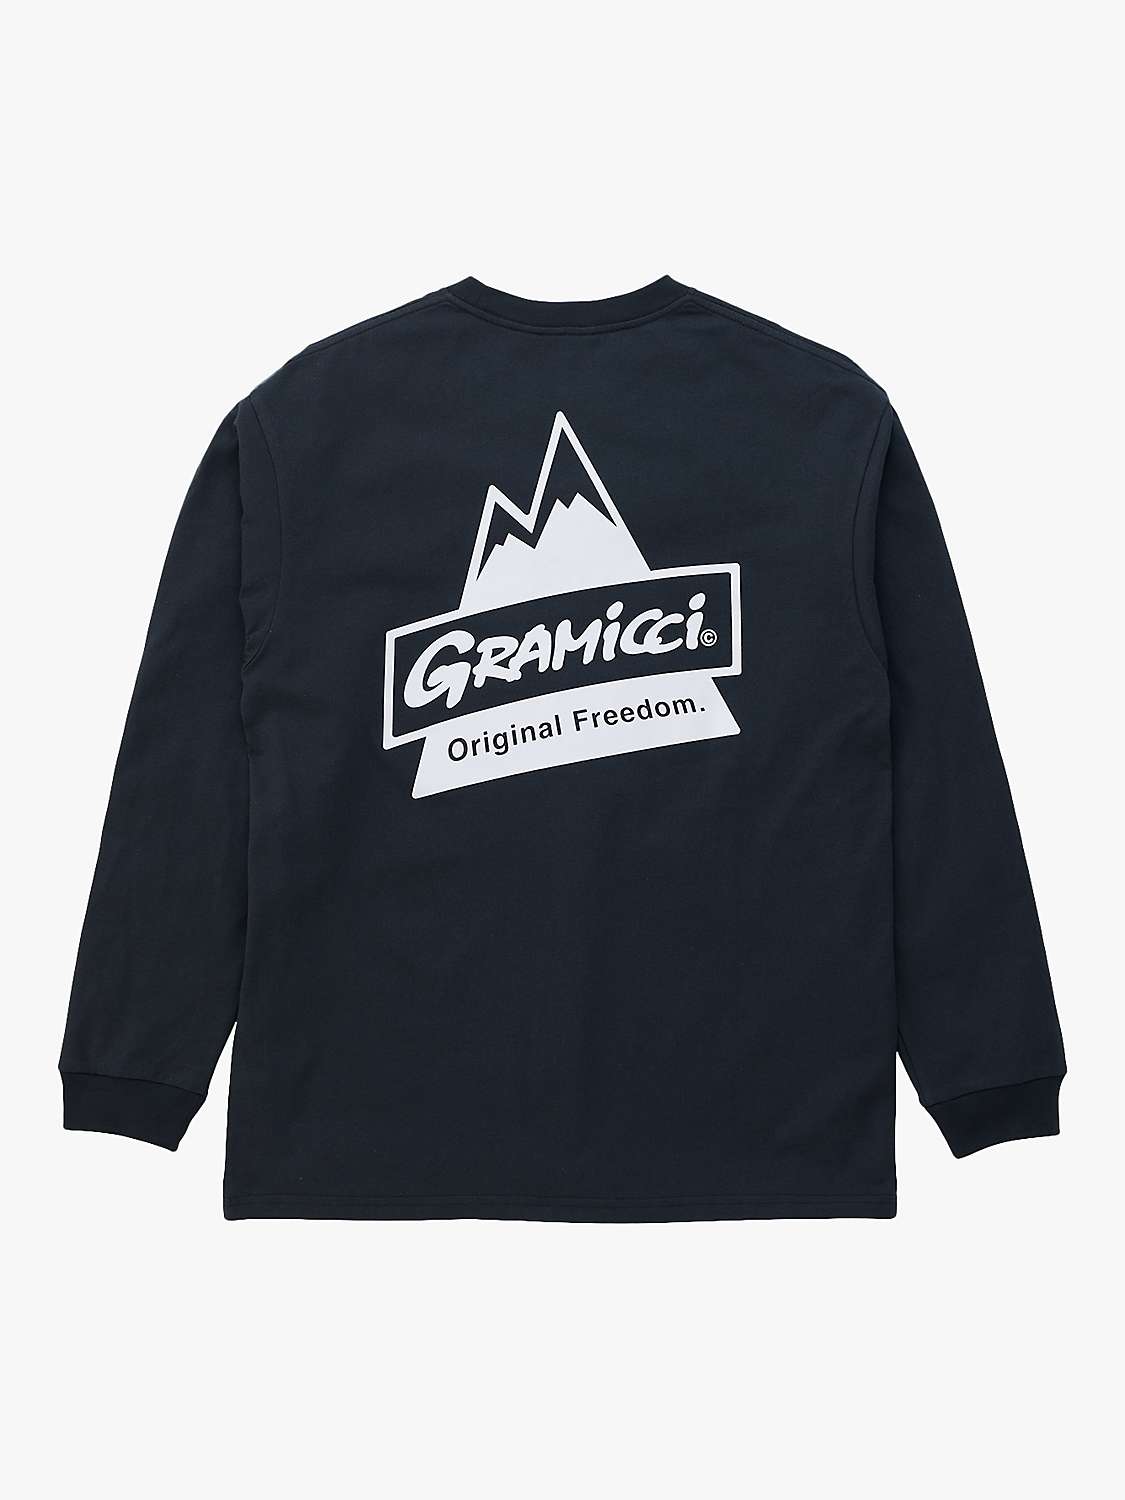 Buy Gramicci Peak Long Sleeve Jersey Top, Vintage Black Online at johnlewis.com